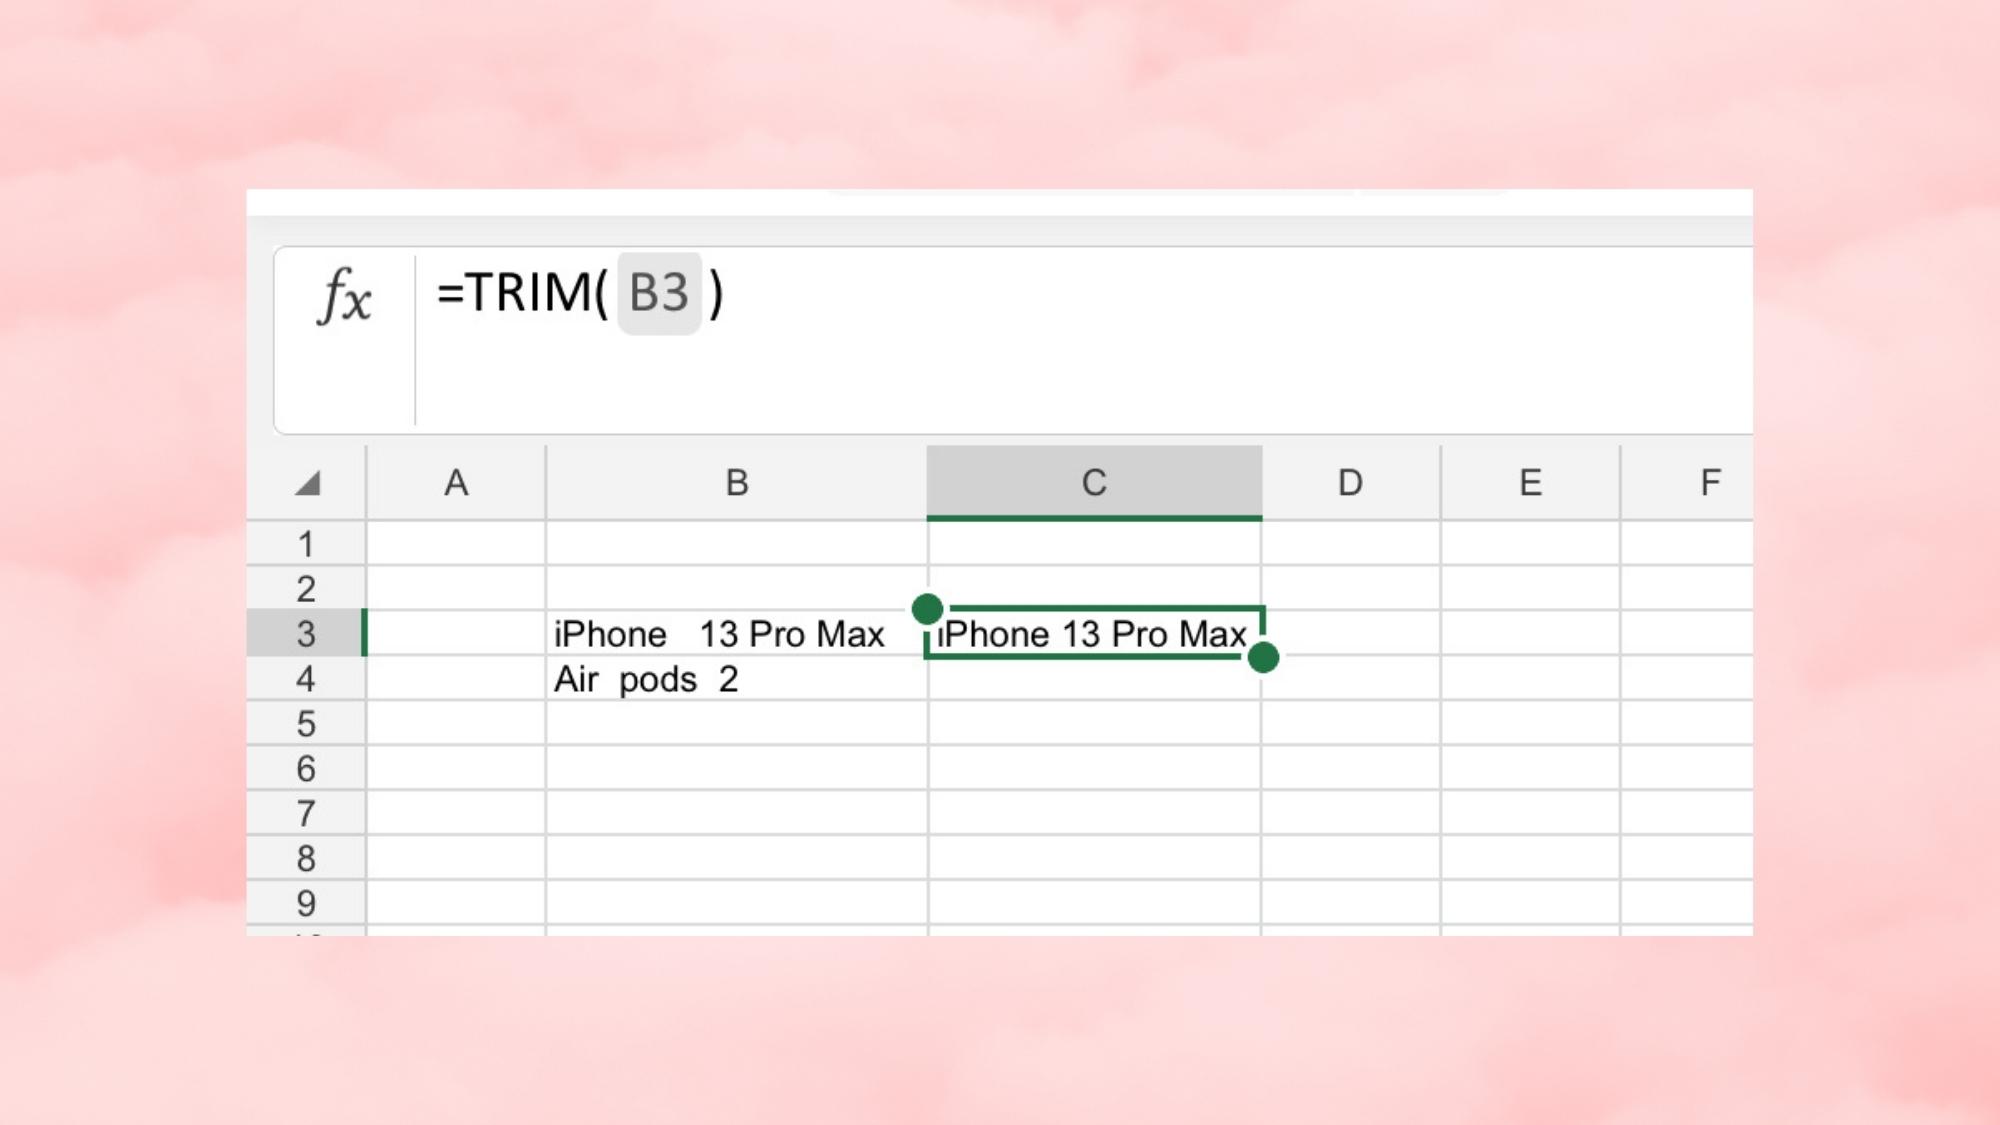 Cách sử dụng công thức TRIM trong Excel hiệu quả - Bước 2